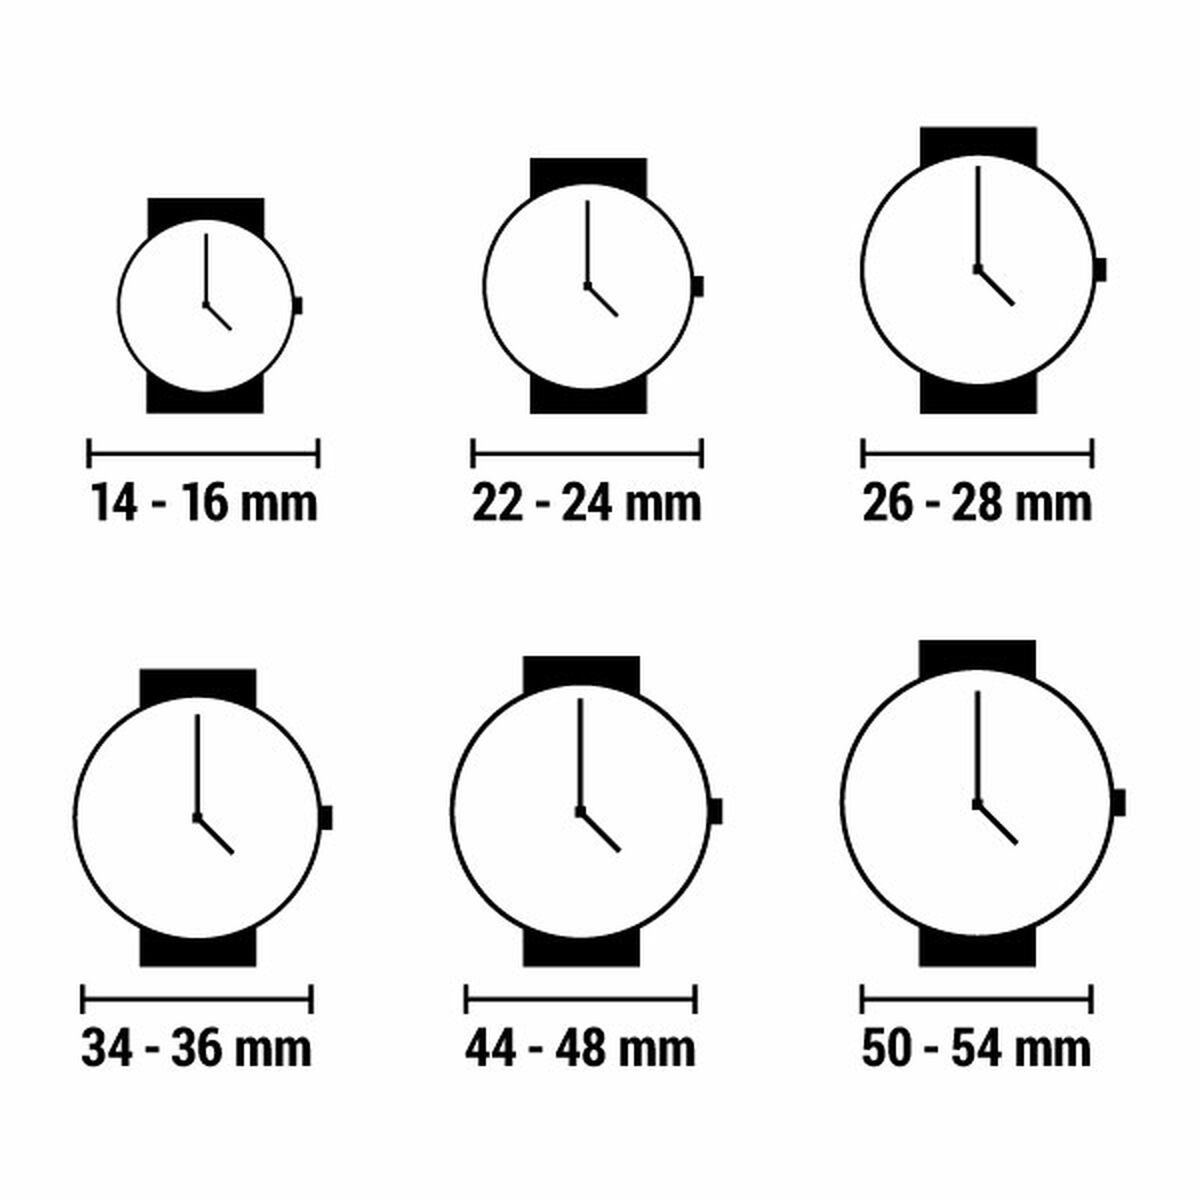 Horloge Dames Q&Q SUPERIOR (Ø 30 mm)